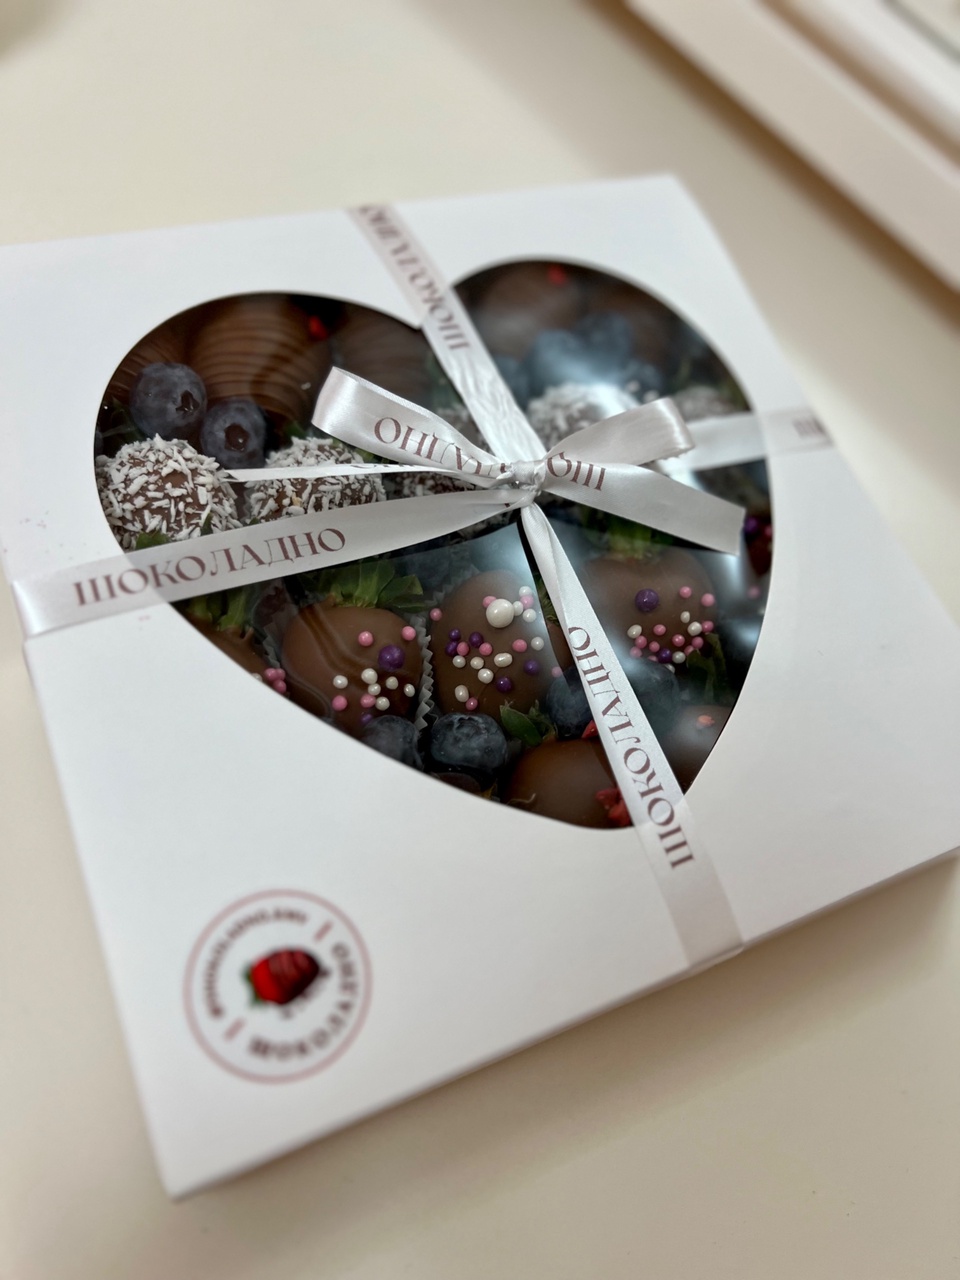 20 клубник в шоколаде + голубика - 2 450 ₽, заказать онлайн.